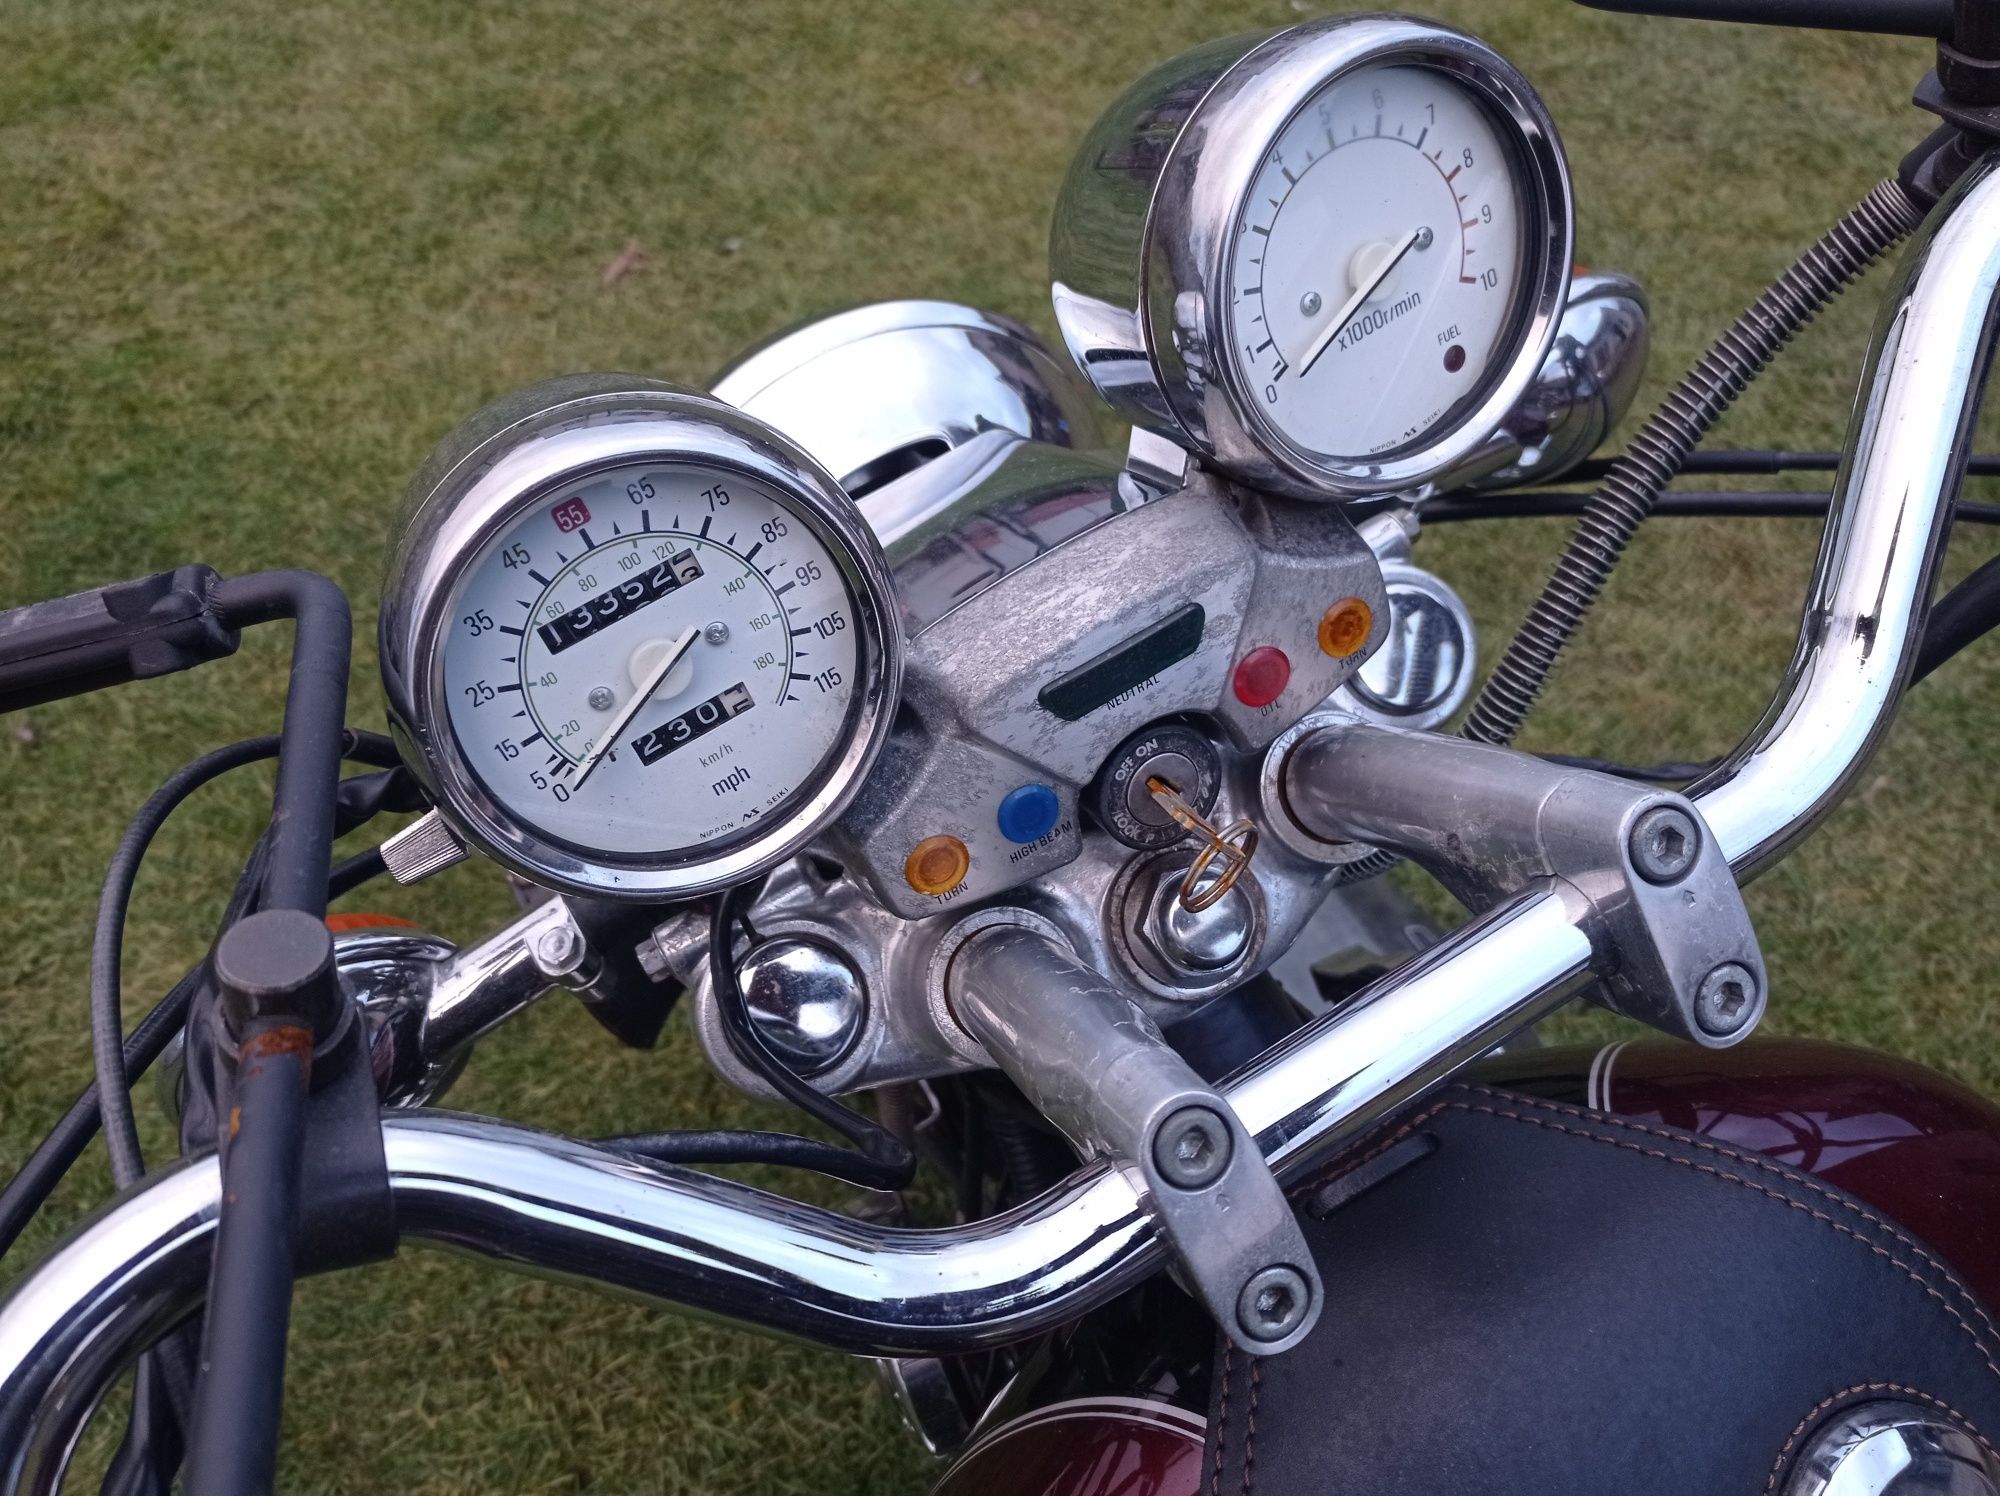 Yamaha xv750 Virago 3al zegary silnik części sprzęgło dekiel stator